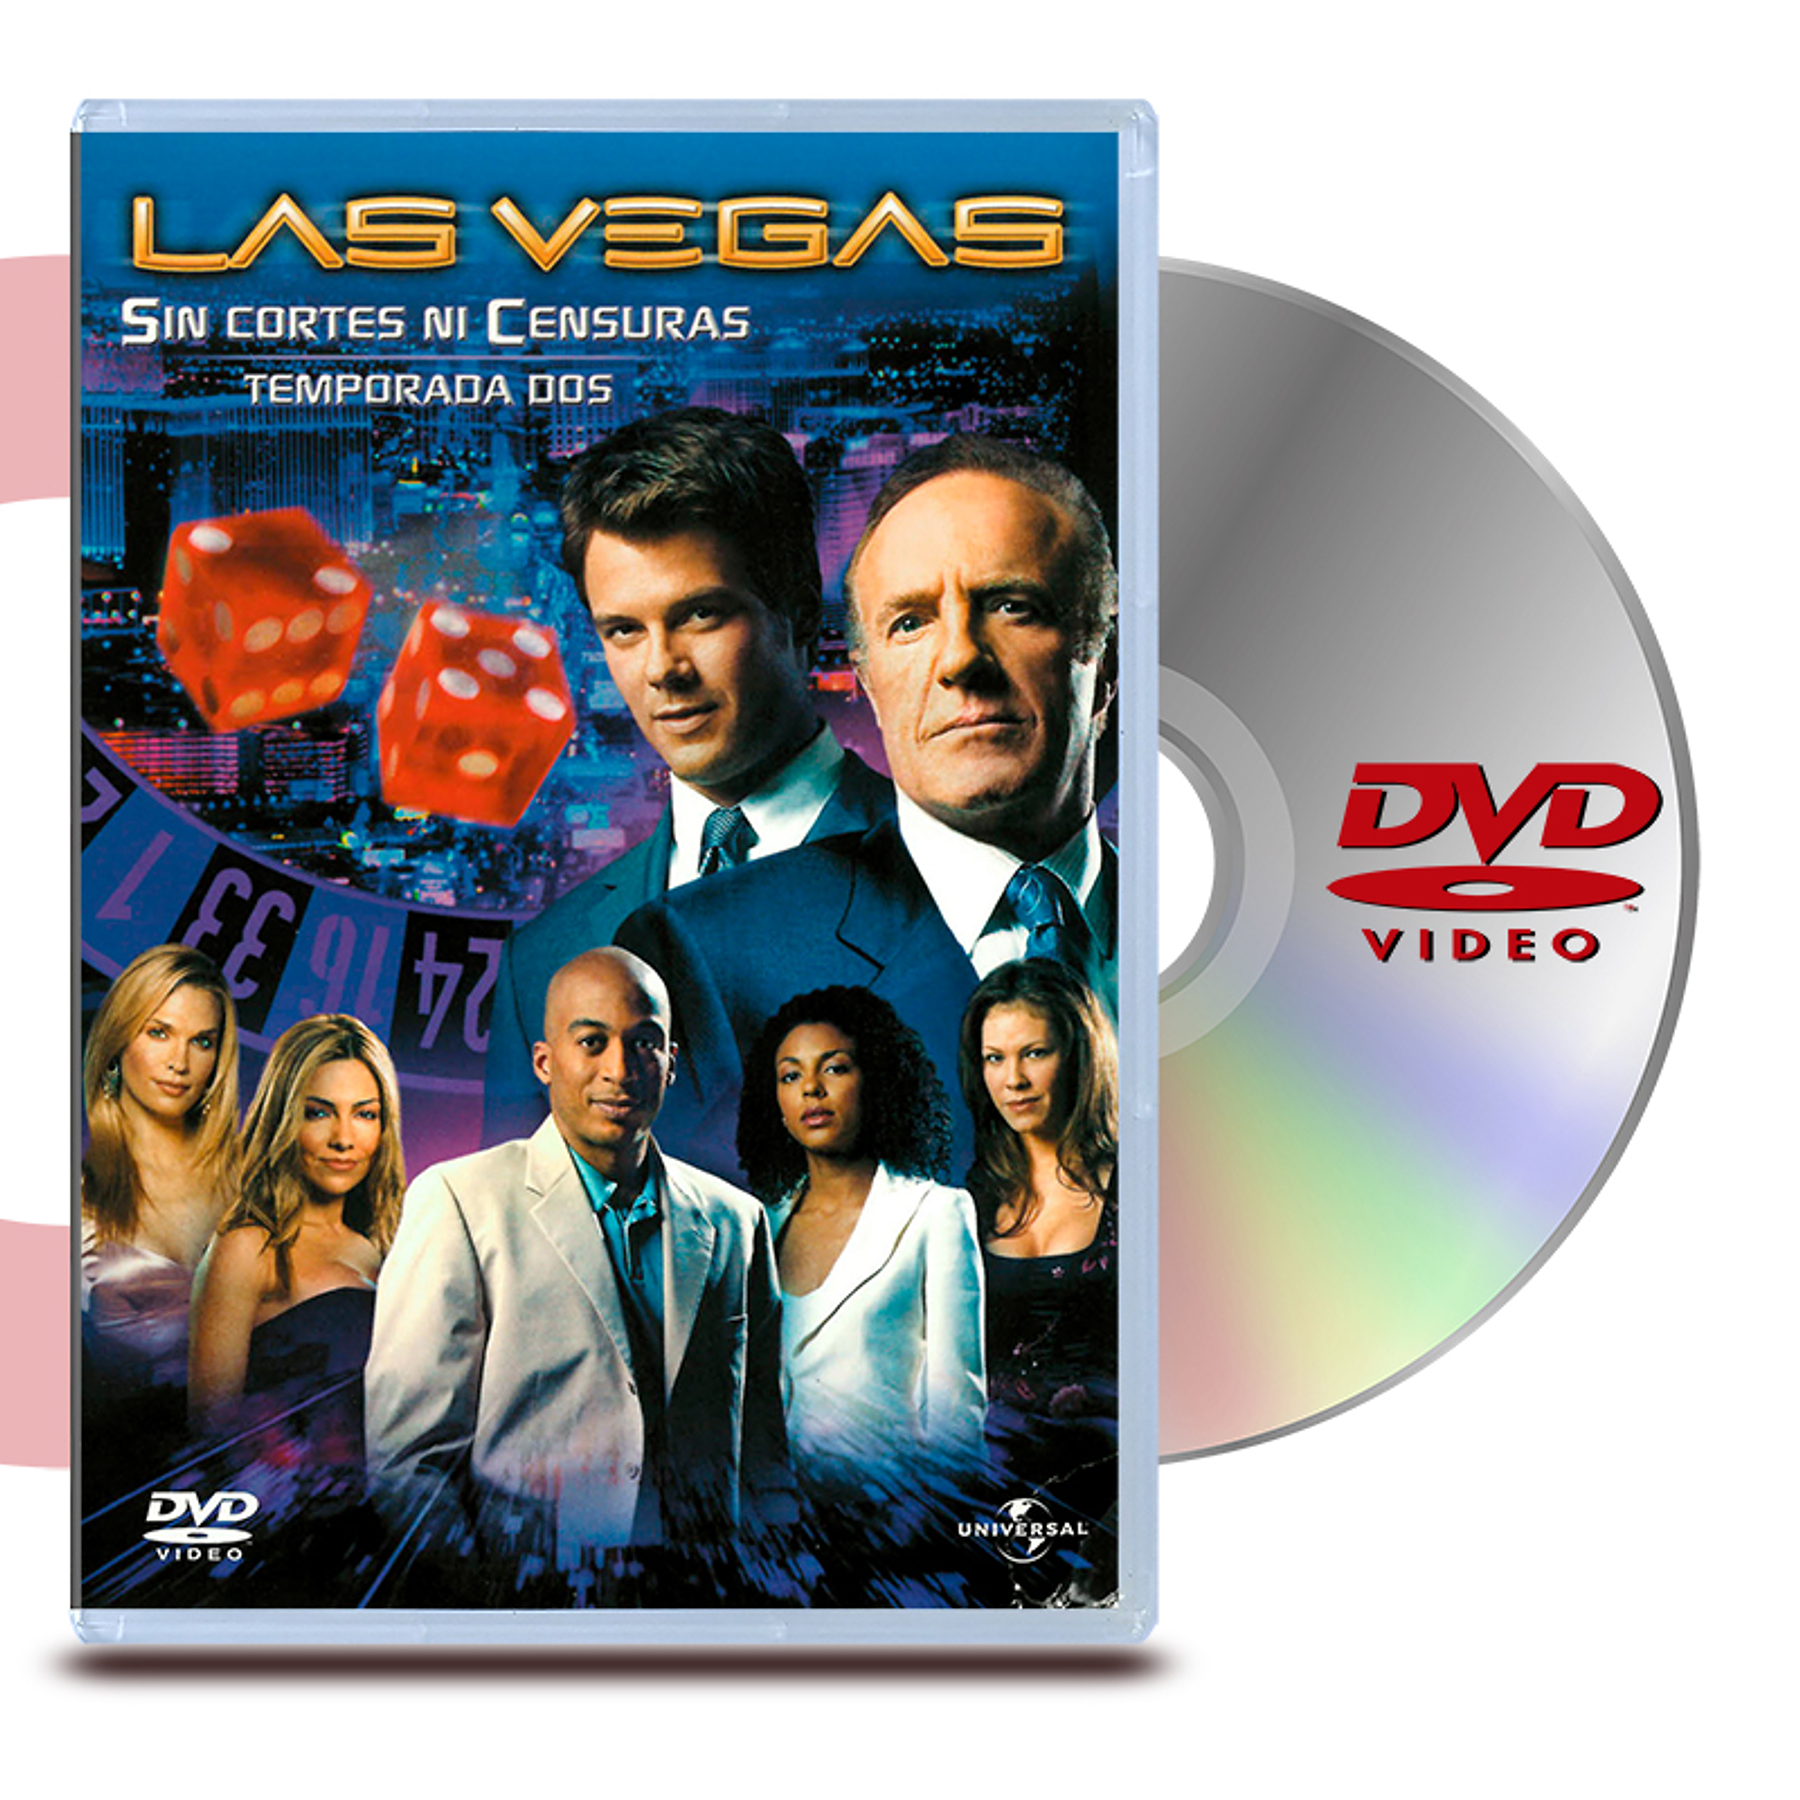 DVD LAS VEGAS: TEMP 2